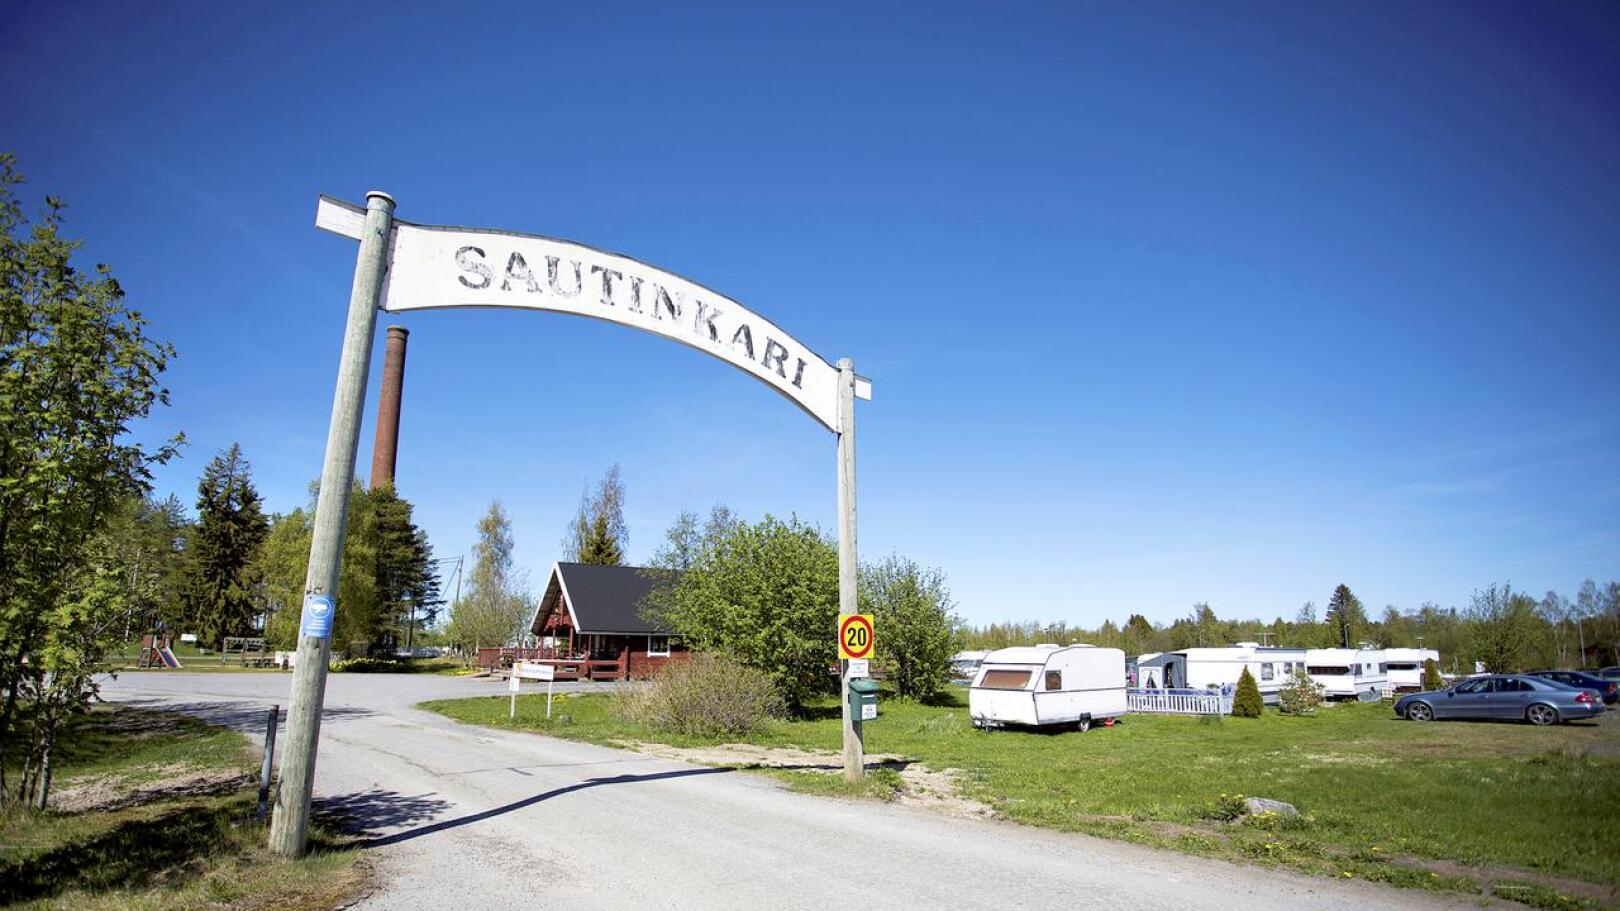 Kalajoen kaupunki hakee tontinosan lunastusta Sautinkarista Kannuskylän jakokunnan omistamalle noin 4695 neliön suuruiselle alueelle. 